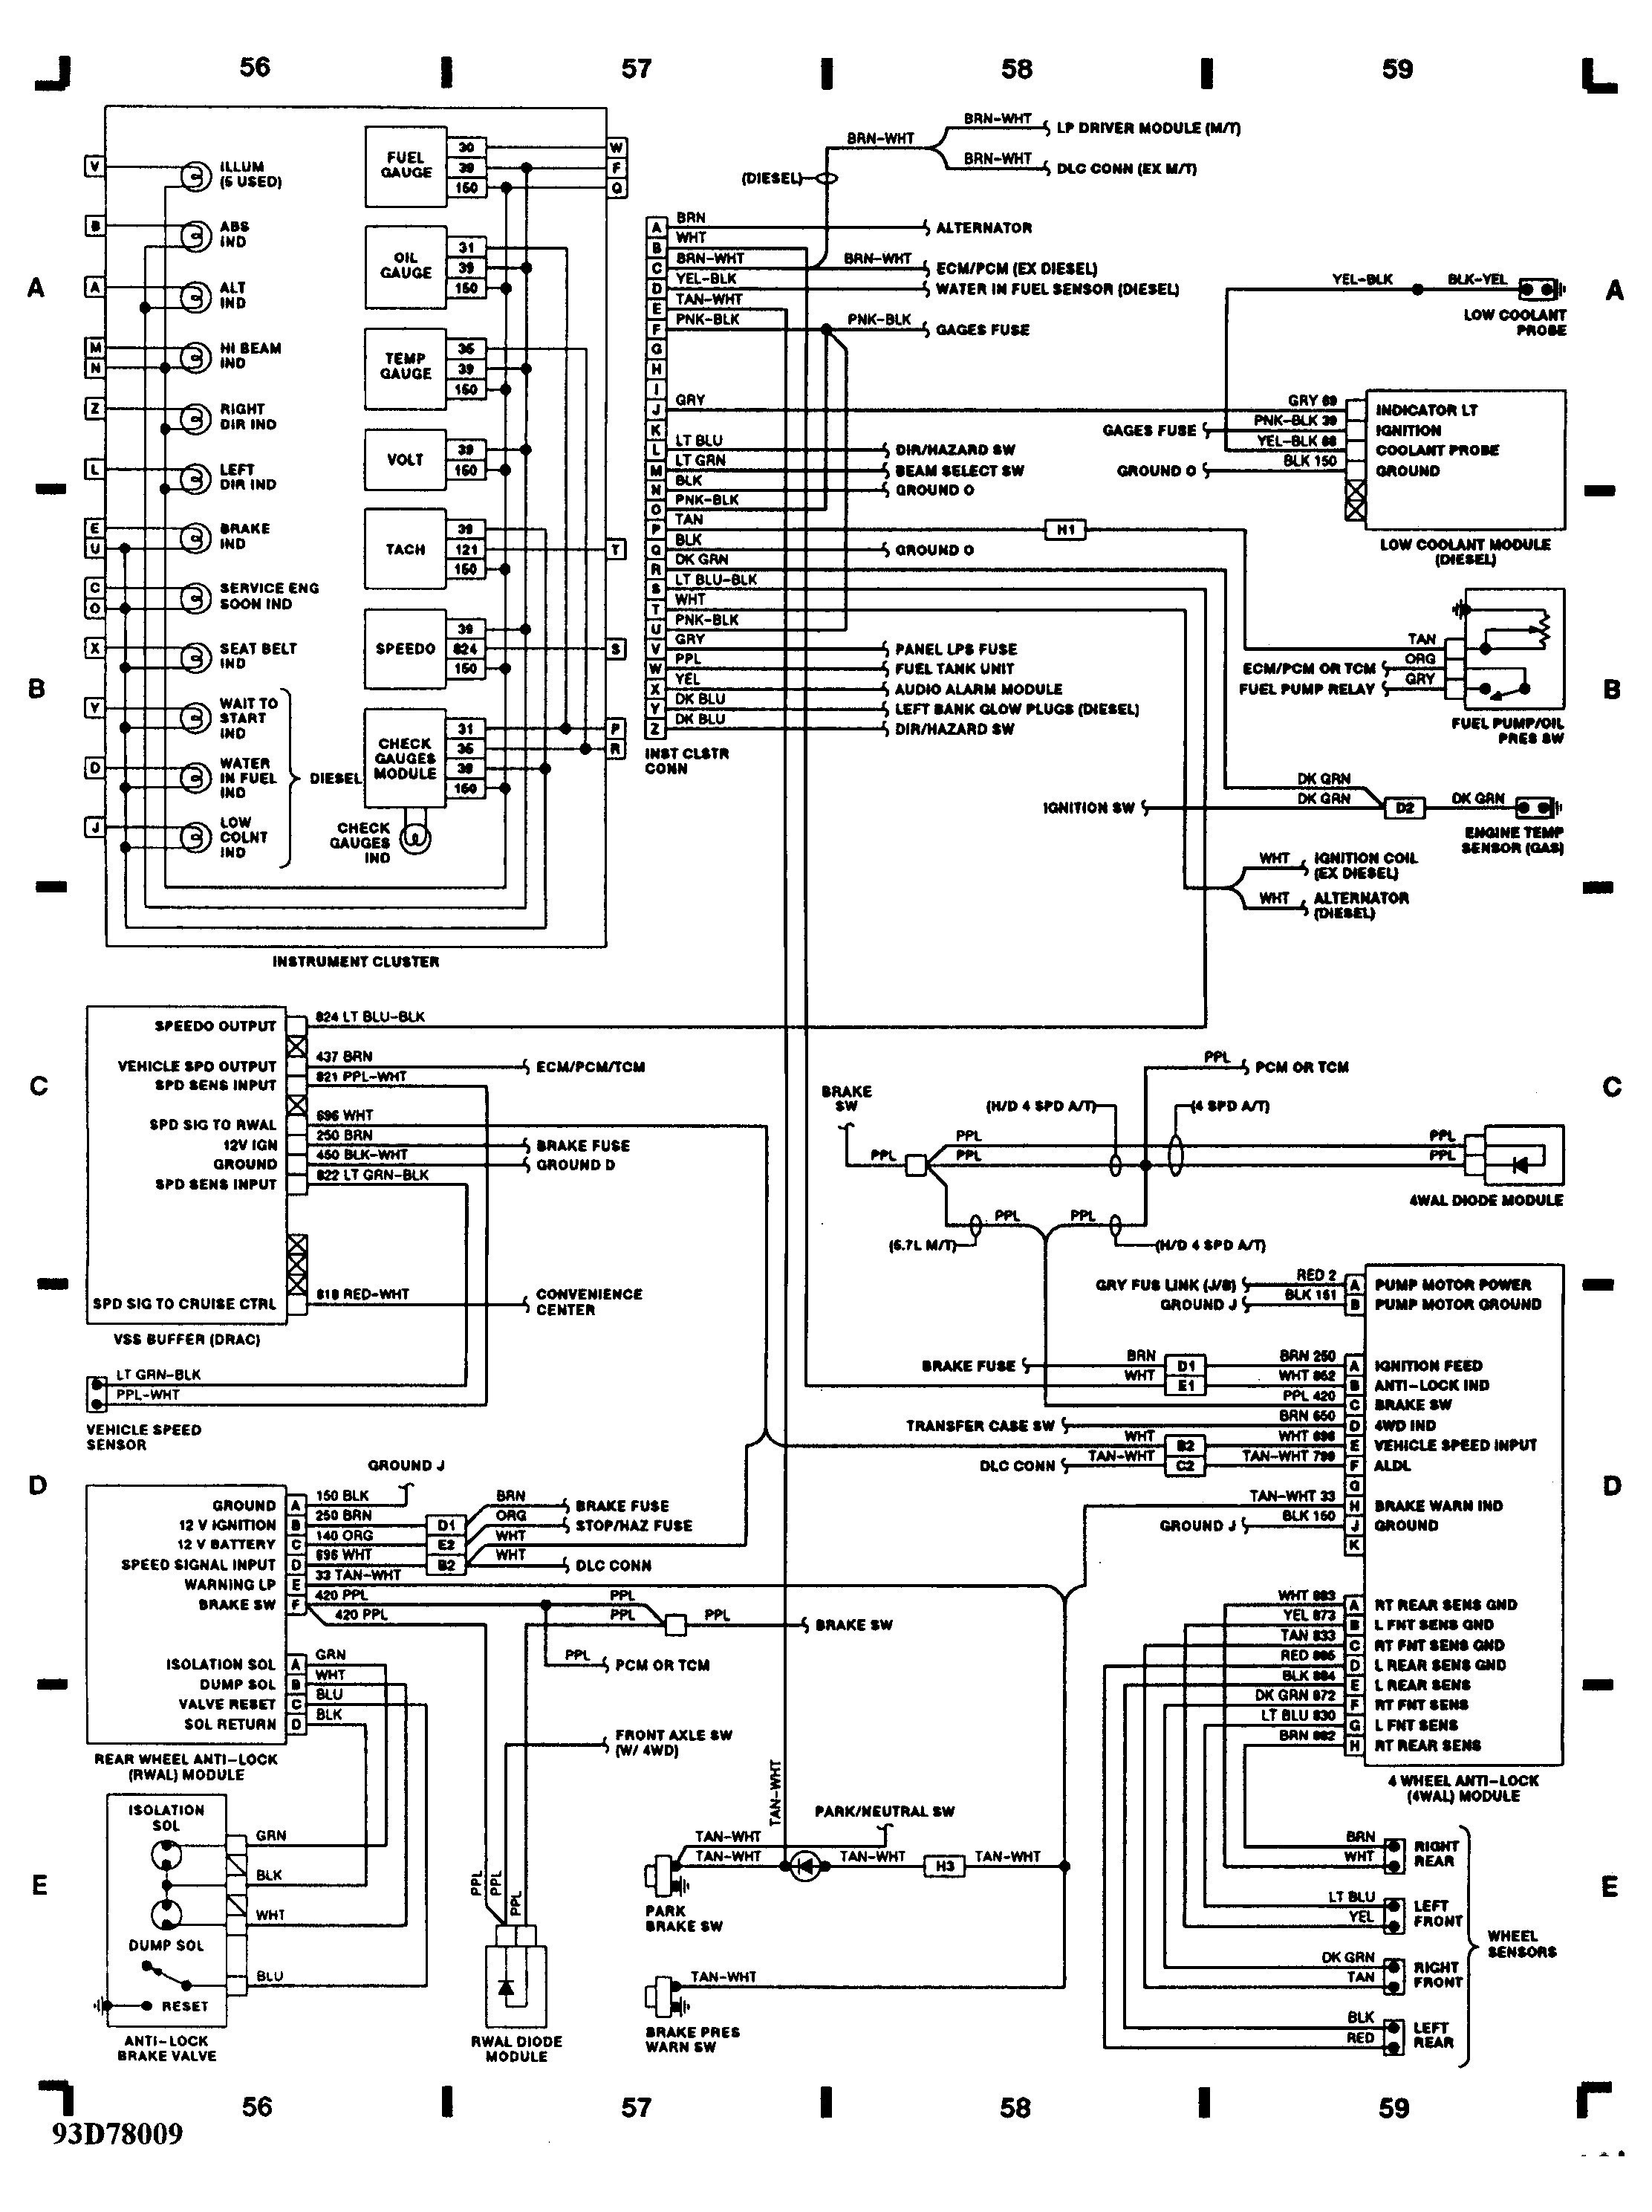 Find Wiring Diagram 2005 Envoy - Wiring Diagram & Schemas